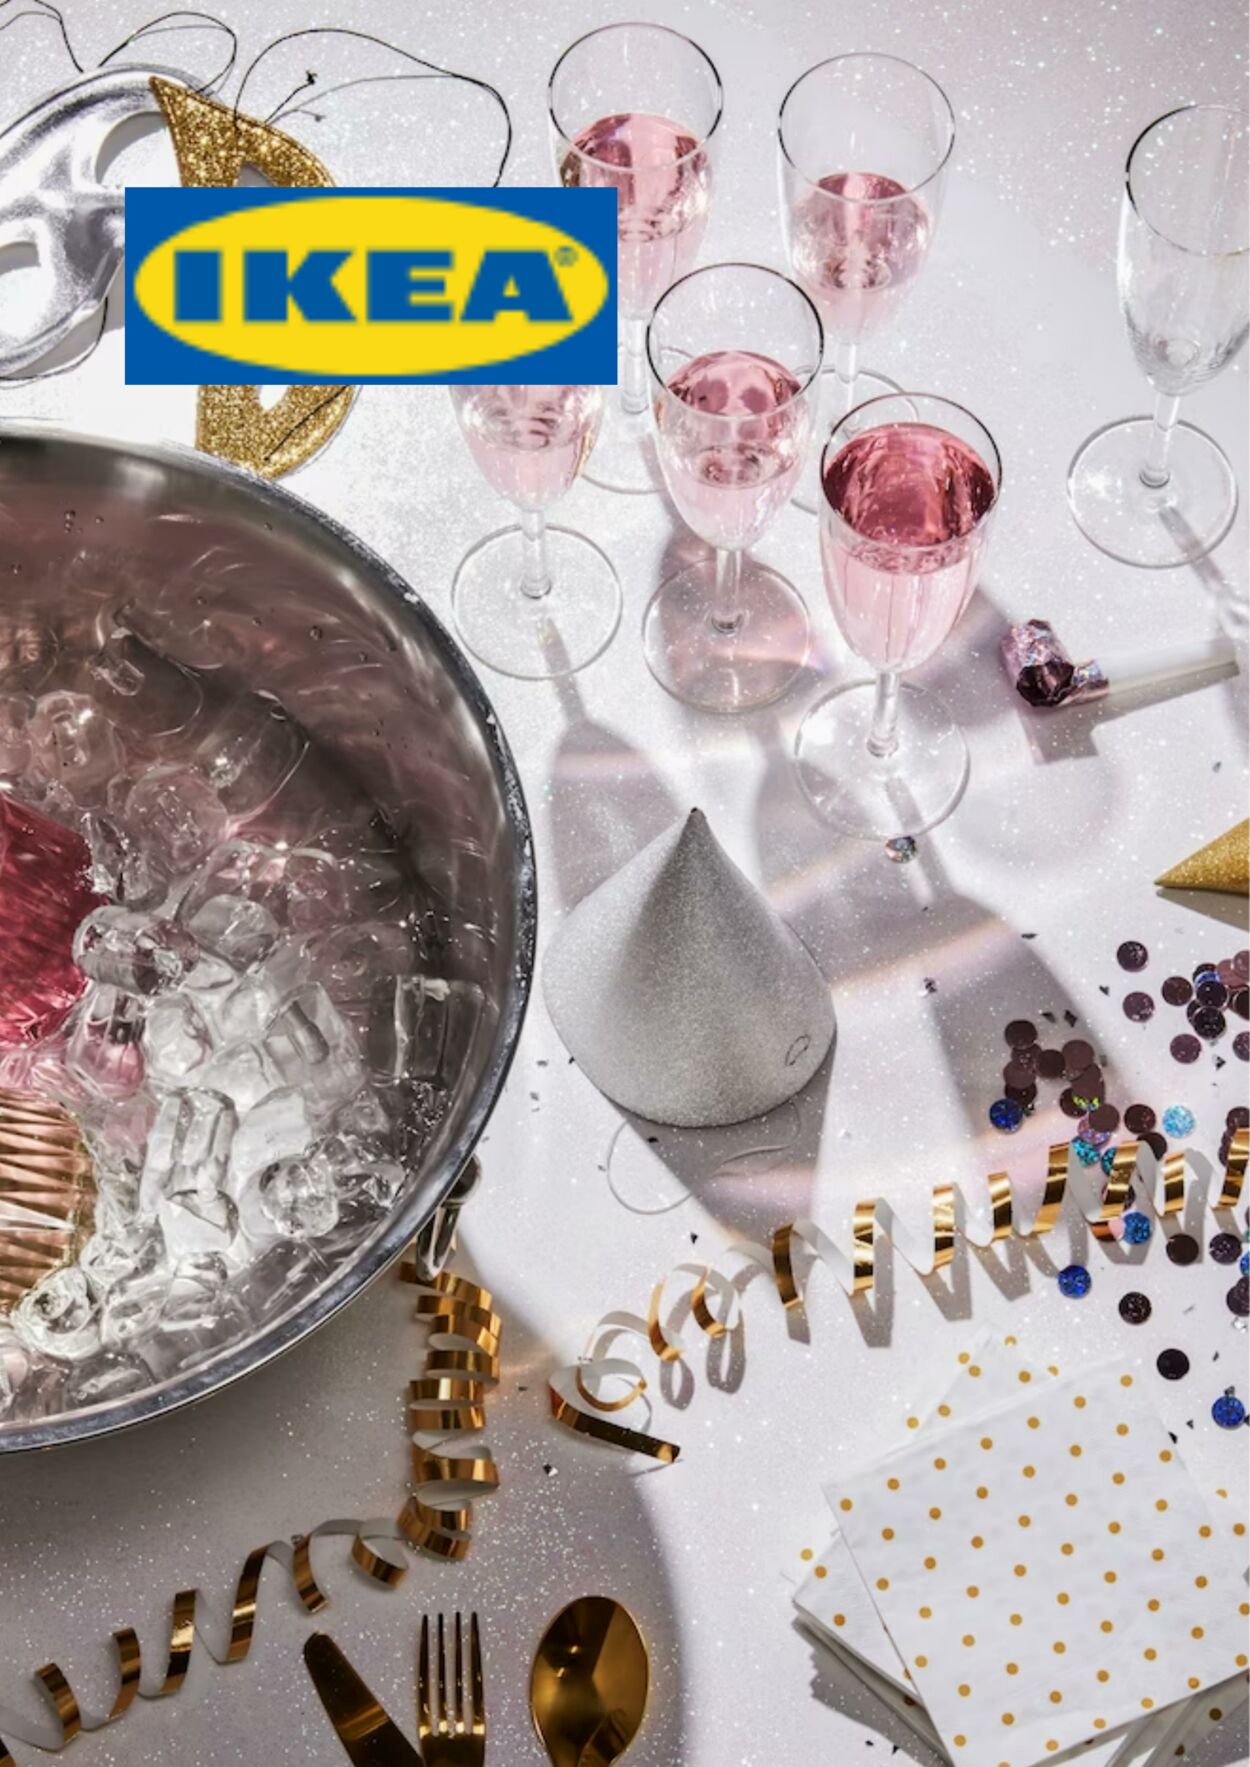 Folheto IKEA 15.11.2022 - 29.11.2022